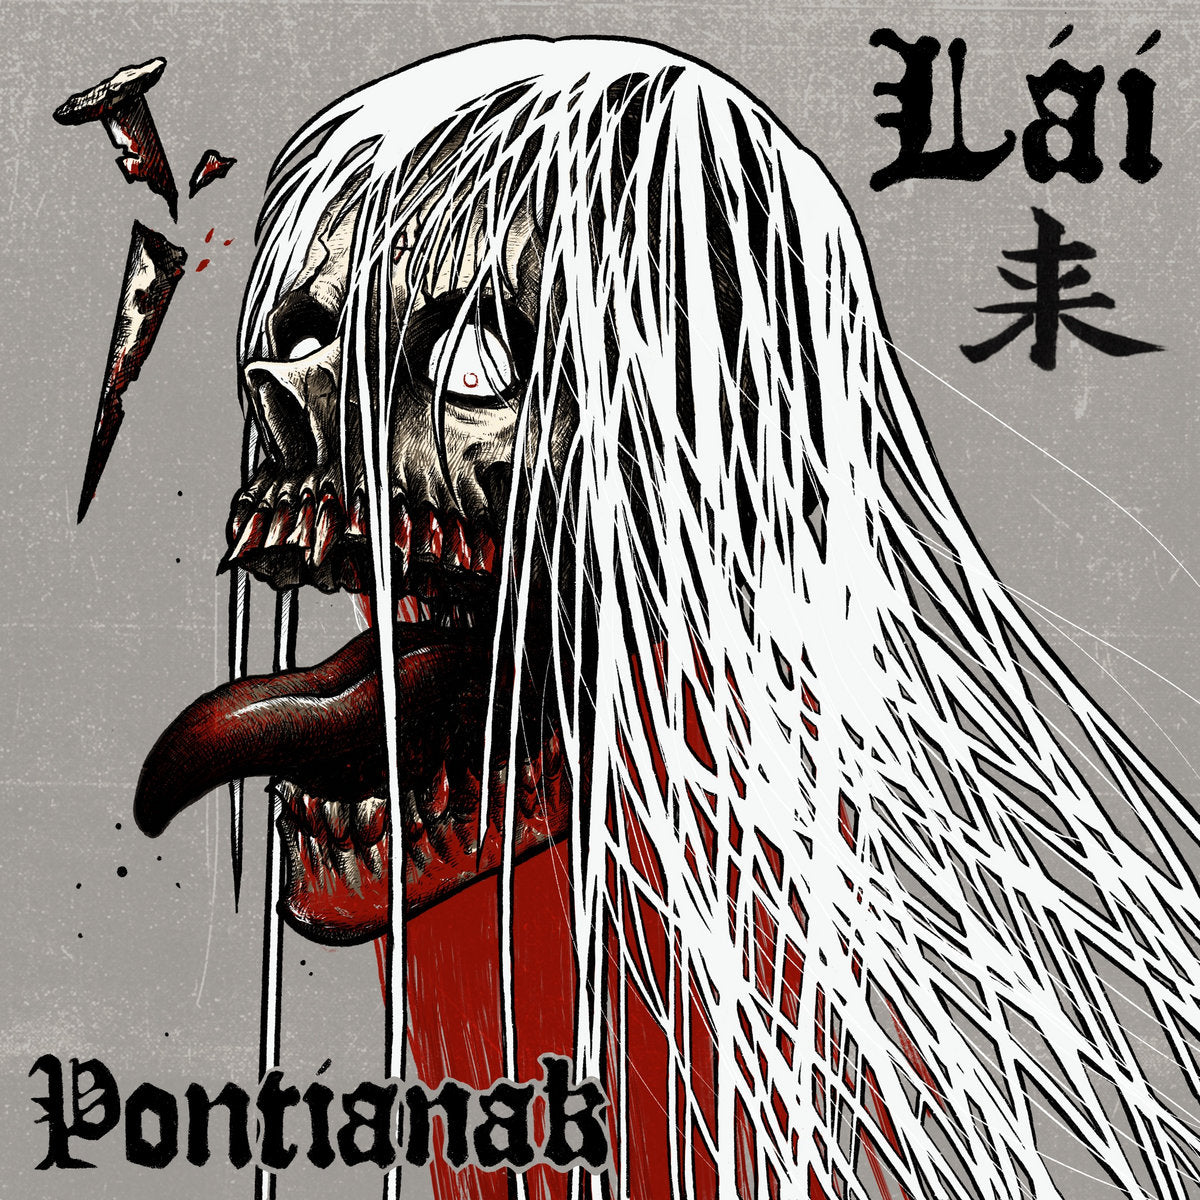 LAI 来 - "PONTIANAK" LP